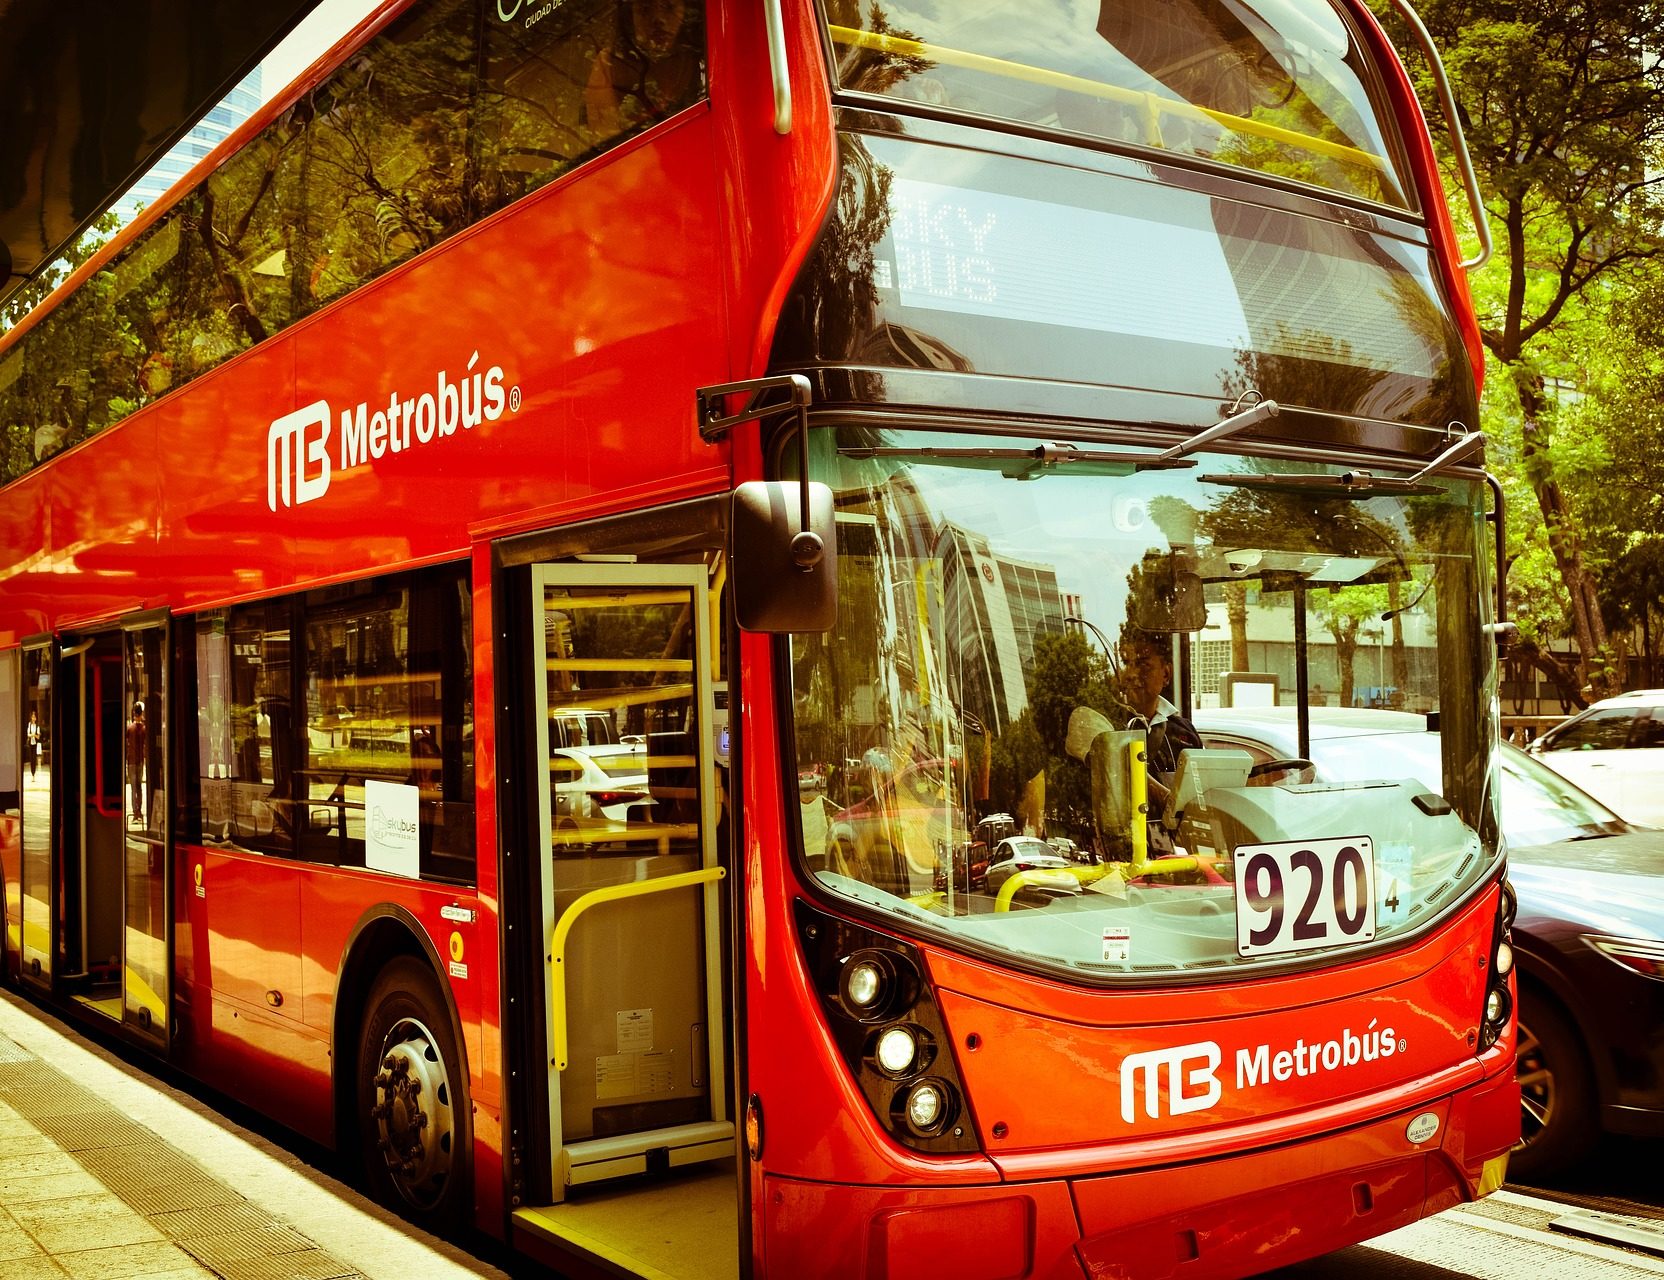 Comparación entre Metrobús Eléctrico y Metrobús tradicional